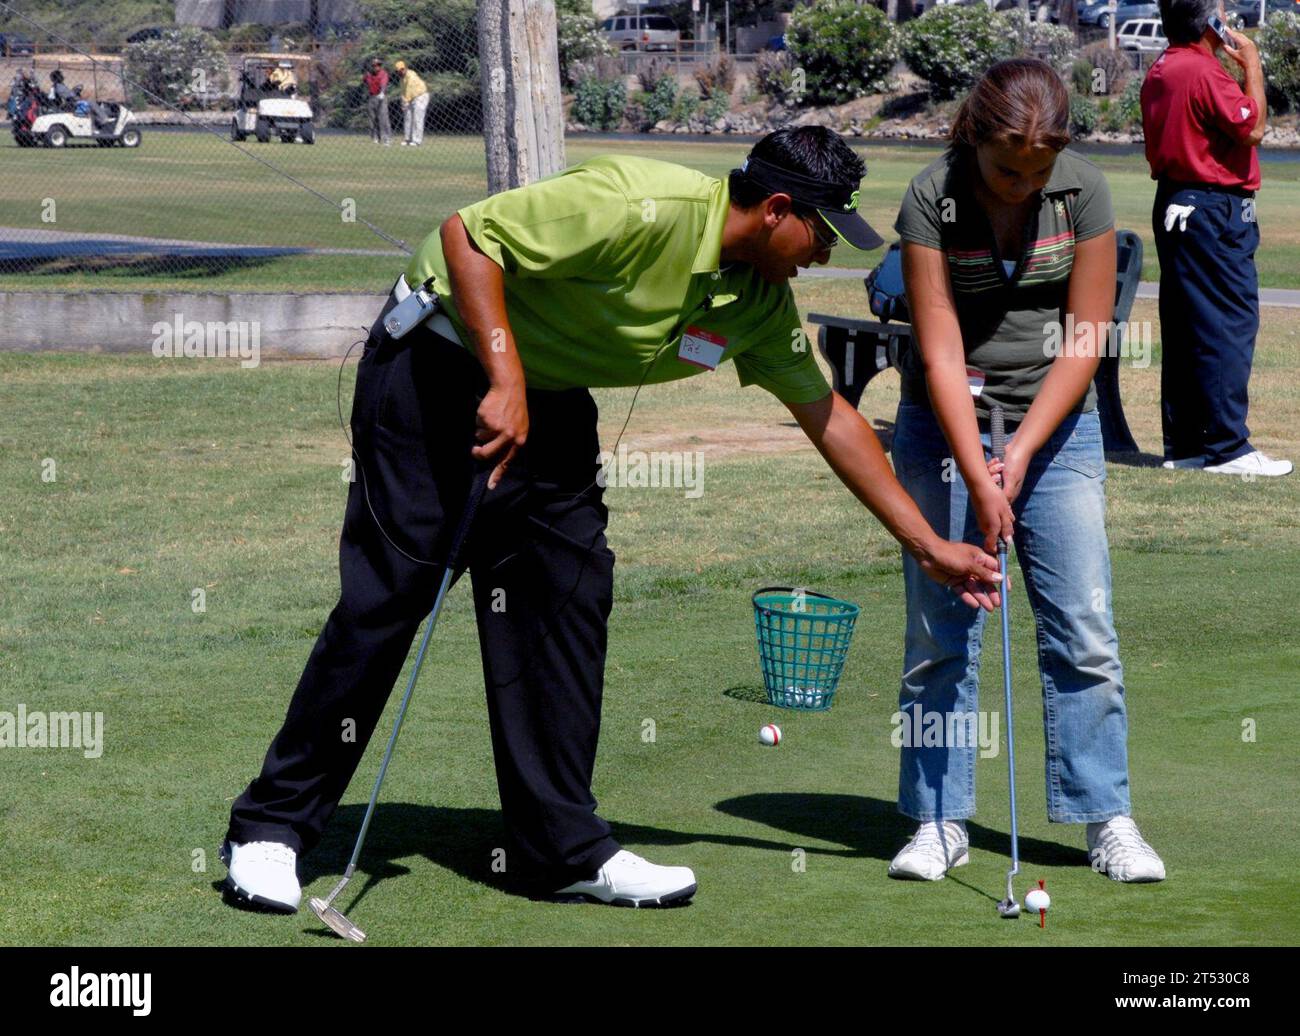 0707189604C-009 CHULA VISTA, KALIFORNIEN (18. Juli 2007) - Golfprofi Pat Diaz gibt einem jungen Golfer einige Tipps zum Putting auf dem städtischen Golfplatz Chula Vista. PIN Pals Junior Links, eine gemeinnützige Organisation, hat eine Partnerschaft mit Armed Services YMCA aus San Diego gegründet und bietet kostenlose Junior-Golfkurse für Jungen und Mädchen im Alter von 10 bis 13 Jahren, deren Eltern dem Land dienen. Jede Session wird von einem PGA-Profi durchgeführt und trifft sich einmal pro Woche für zwei, vierwöchige Sitzungen. Dabei werden die Grundlagen des Puttens, Chipping, Pitching und des vollen Swing behandelt. US Navy Stockfoto